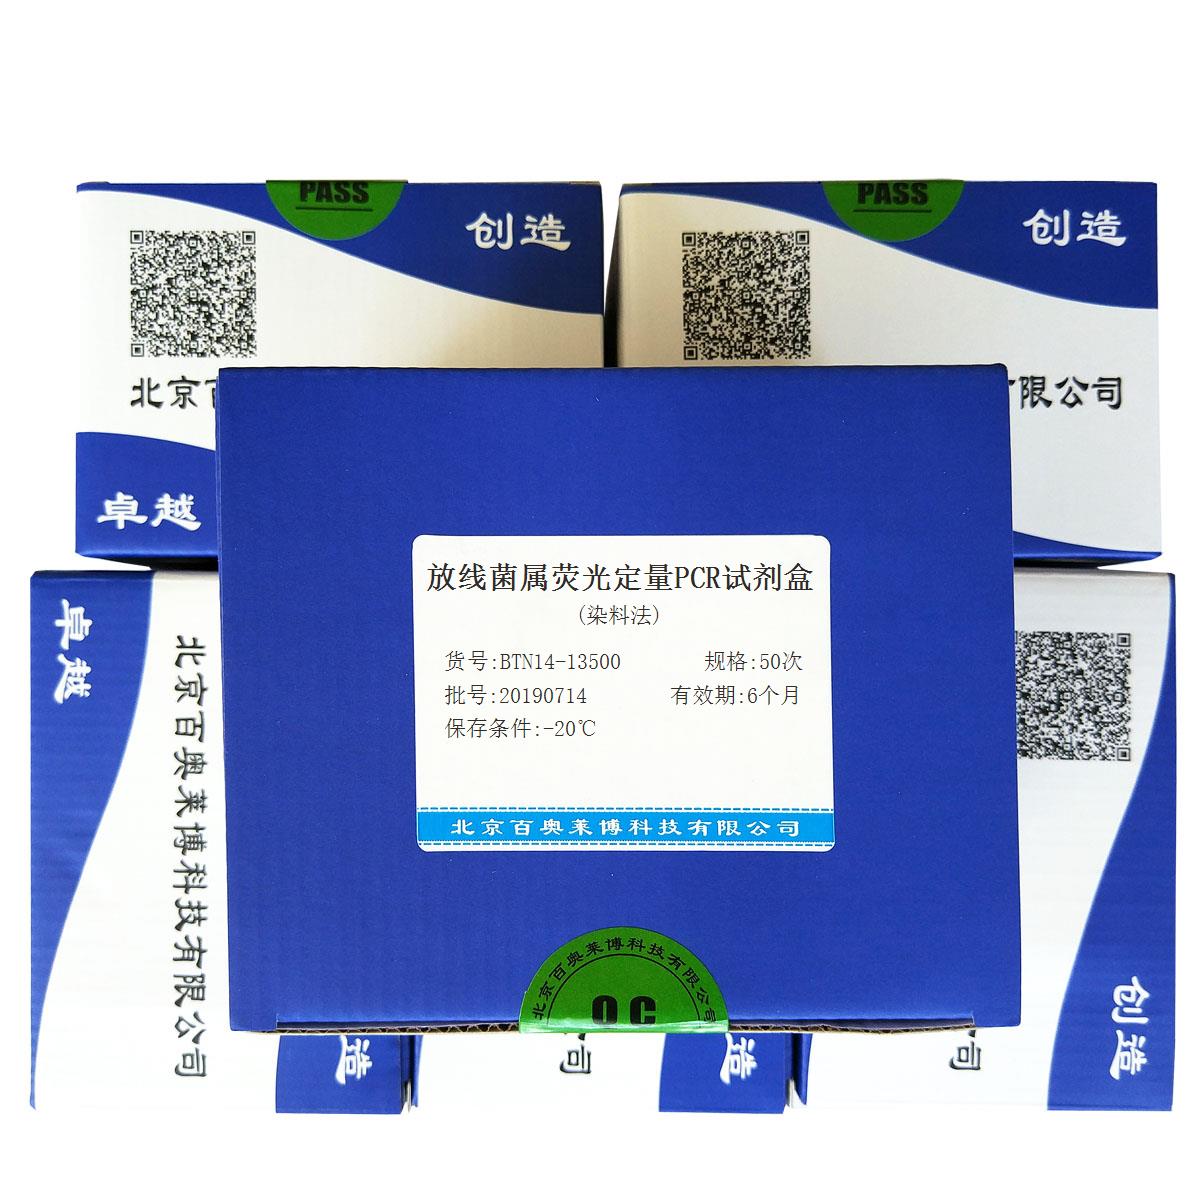 放线菌属荧光定量PCR试剂盒(染料法)北京价格